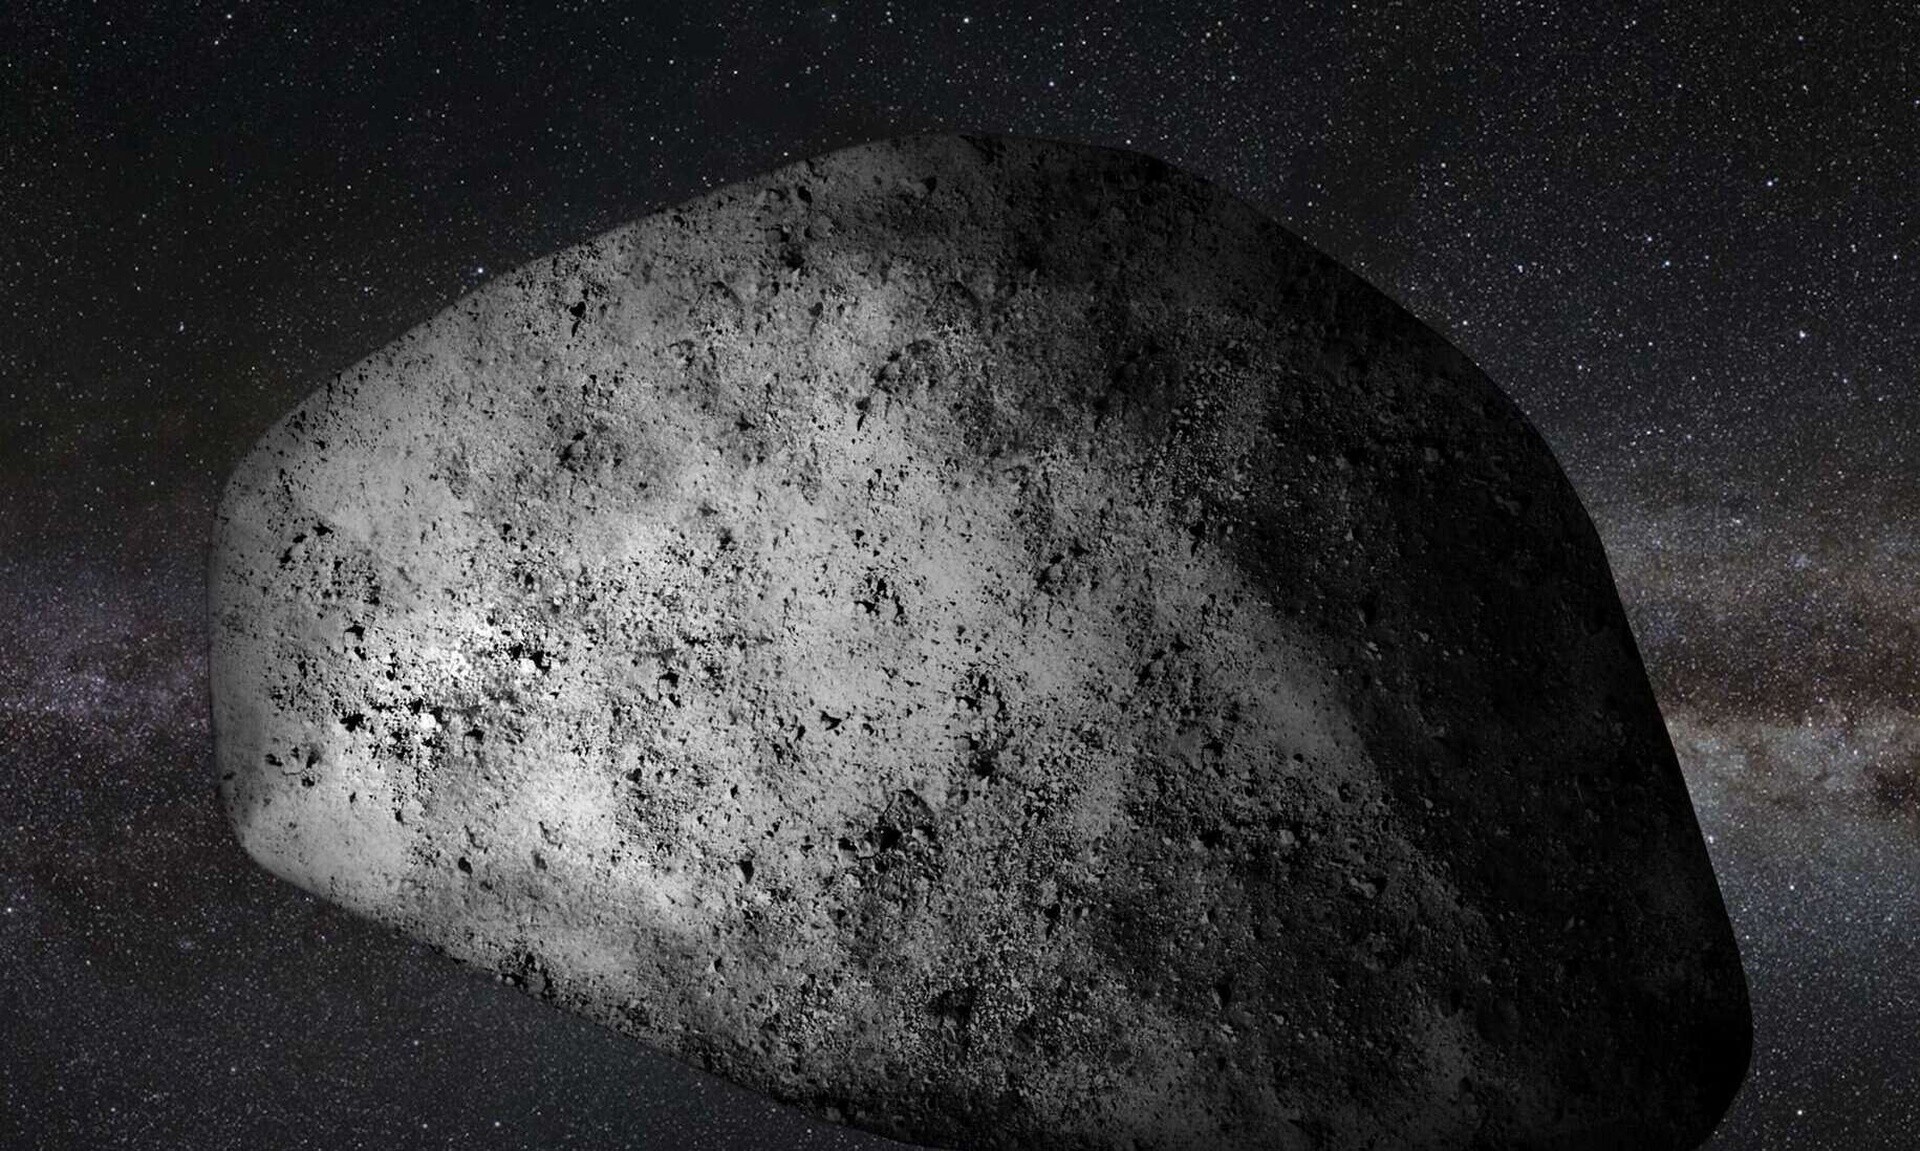 Αστεροειδής Απόφις: Σε πέντε χρόνια από σήμερα θα περάσει ξυστά από τη Γη- Ορατός με γυμνό μάτι